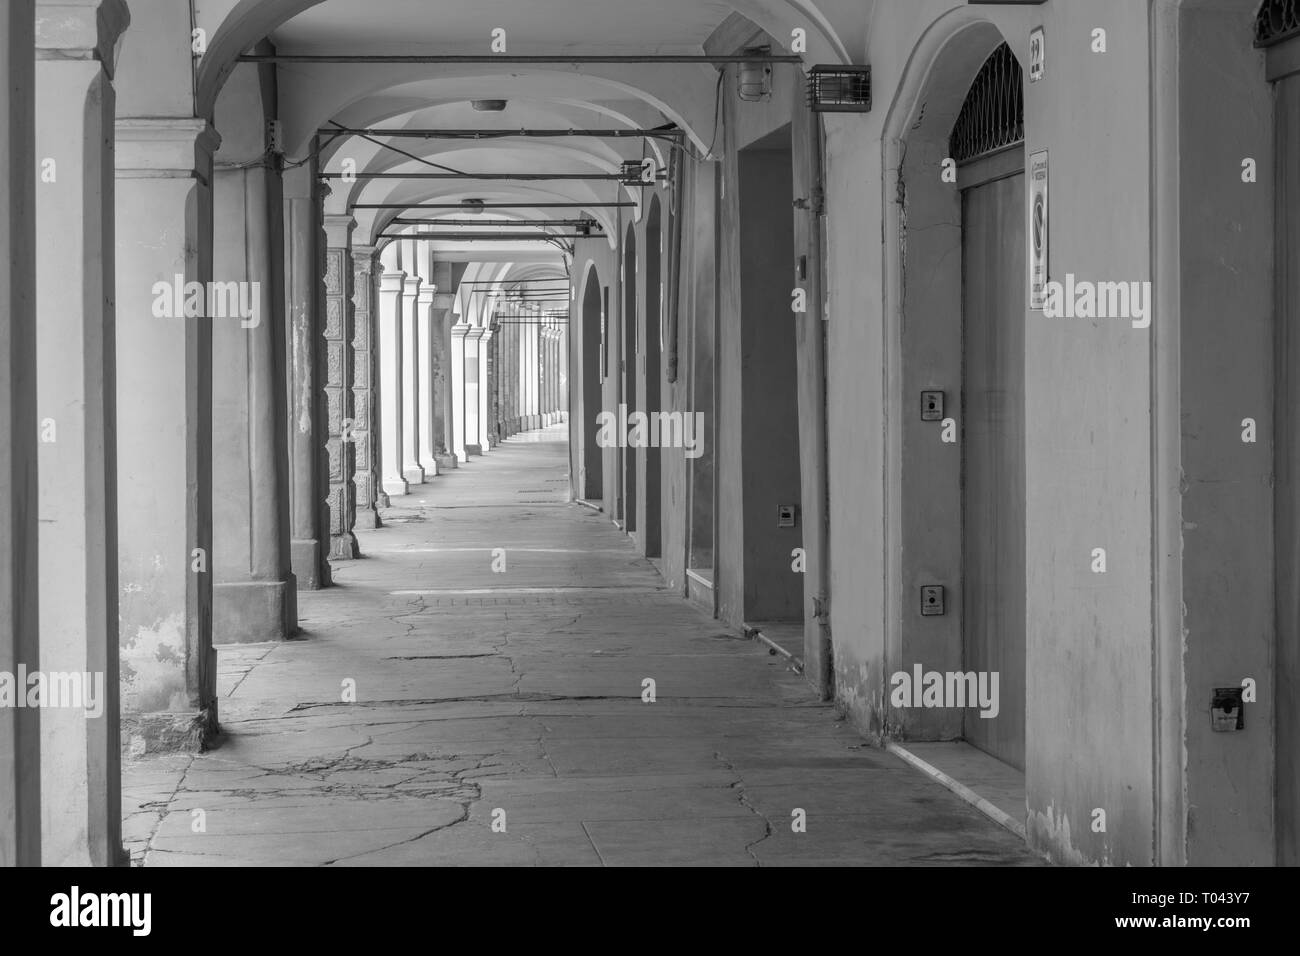 Modena - Die arkaden der Altstadt. Stockfoto